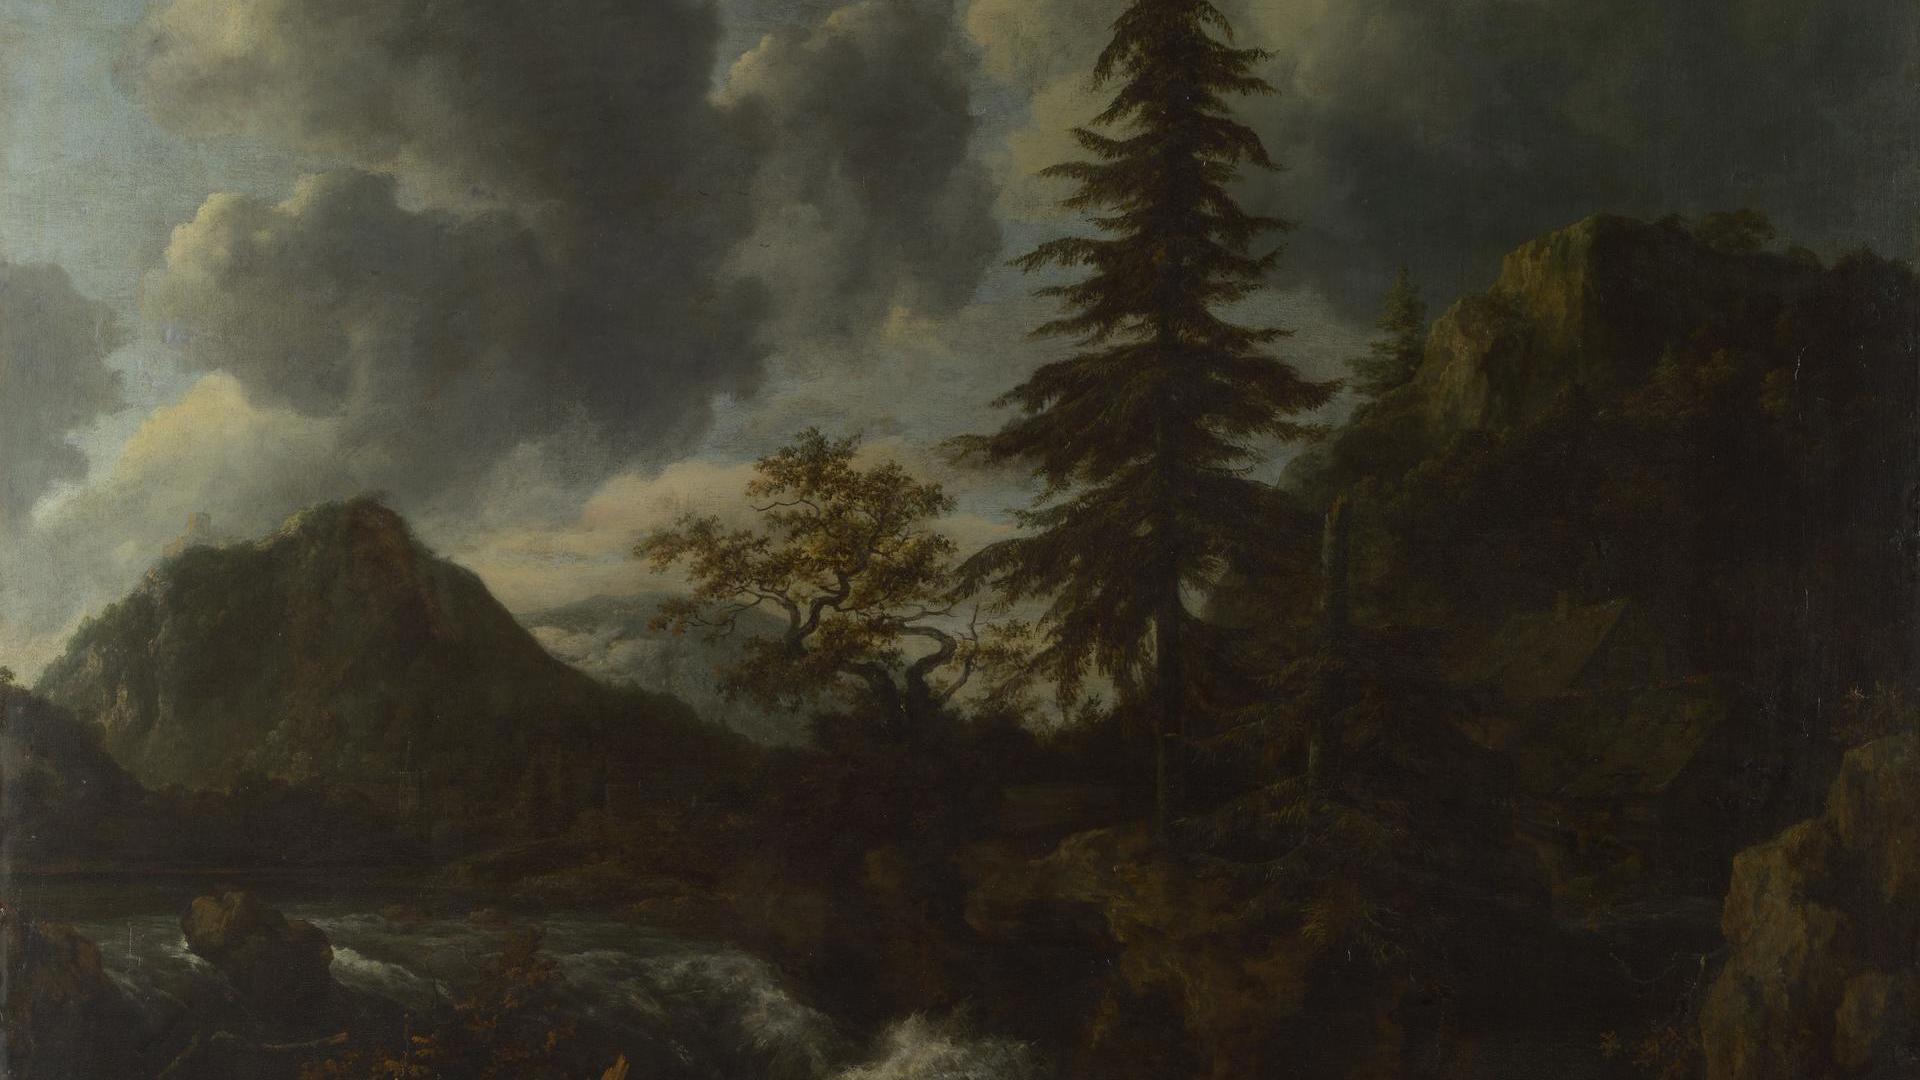 A Torrent in a Mountainous Landscape by Jacob van Ruisdael